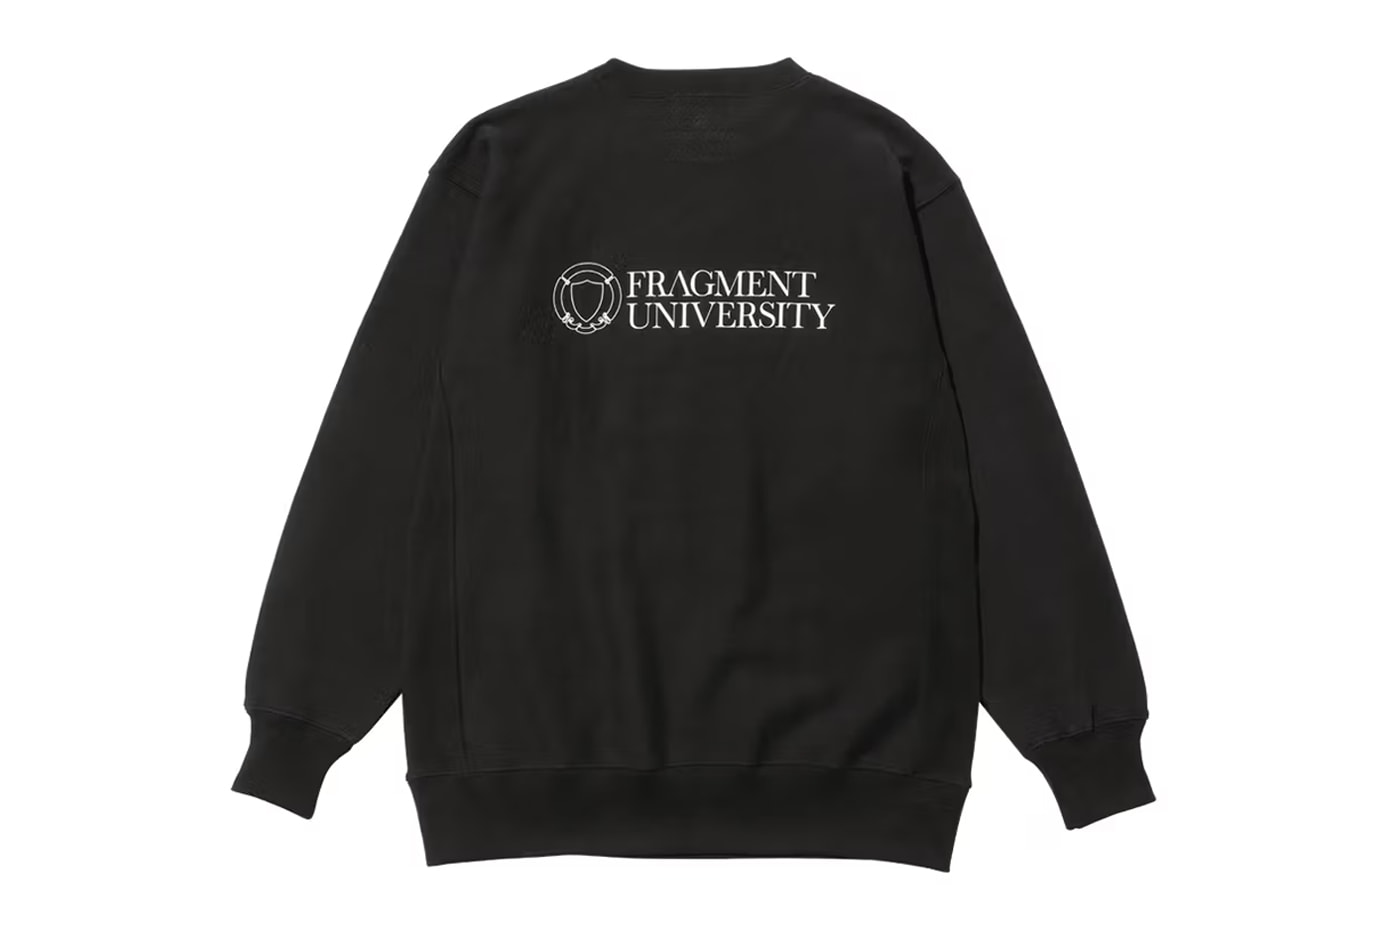 후지와라 히로시의 프라그먼트 대학 공식 머천다이즈 출시, 프라그먼트 디자인, 번개 로고